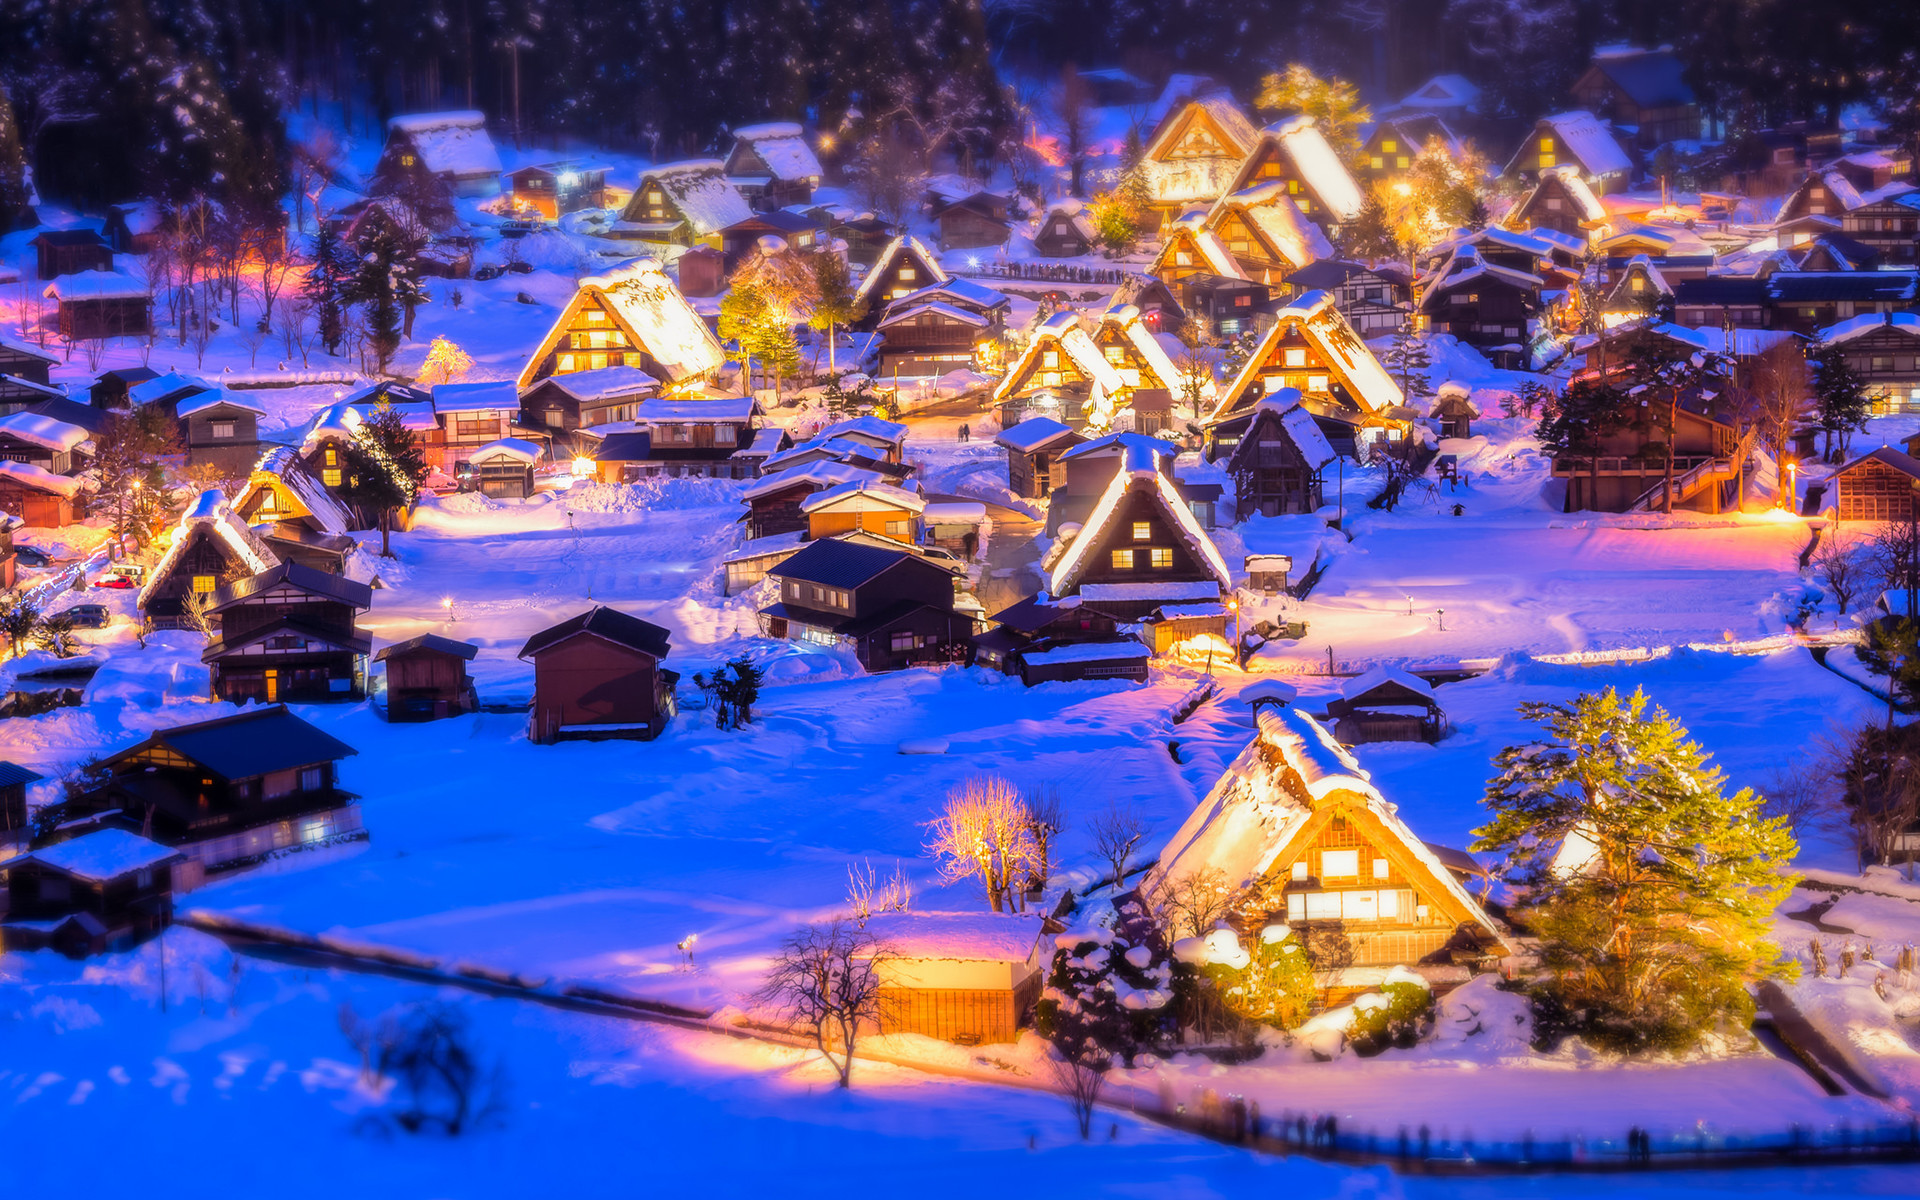 Một ngôi làng Giáng sinh thật sự đẹp mắt và rực rỡ sẽ khiến cho bạn và gia đình cảm thấy ngập tràn niềm vui và hạnh phúc. Hãy xem hình ảnh này để trải nghiệm cuộc sống ở một ngôi làng Giáng sinh như thế nào nhé!